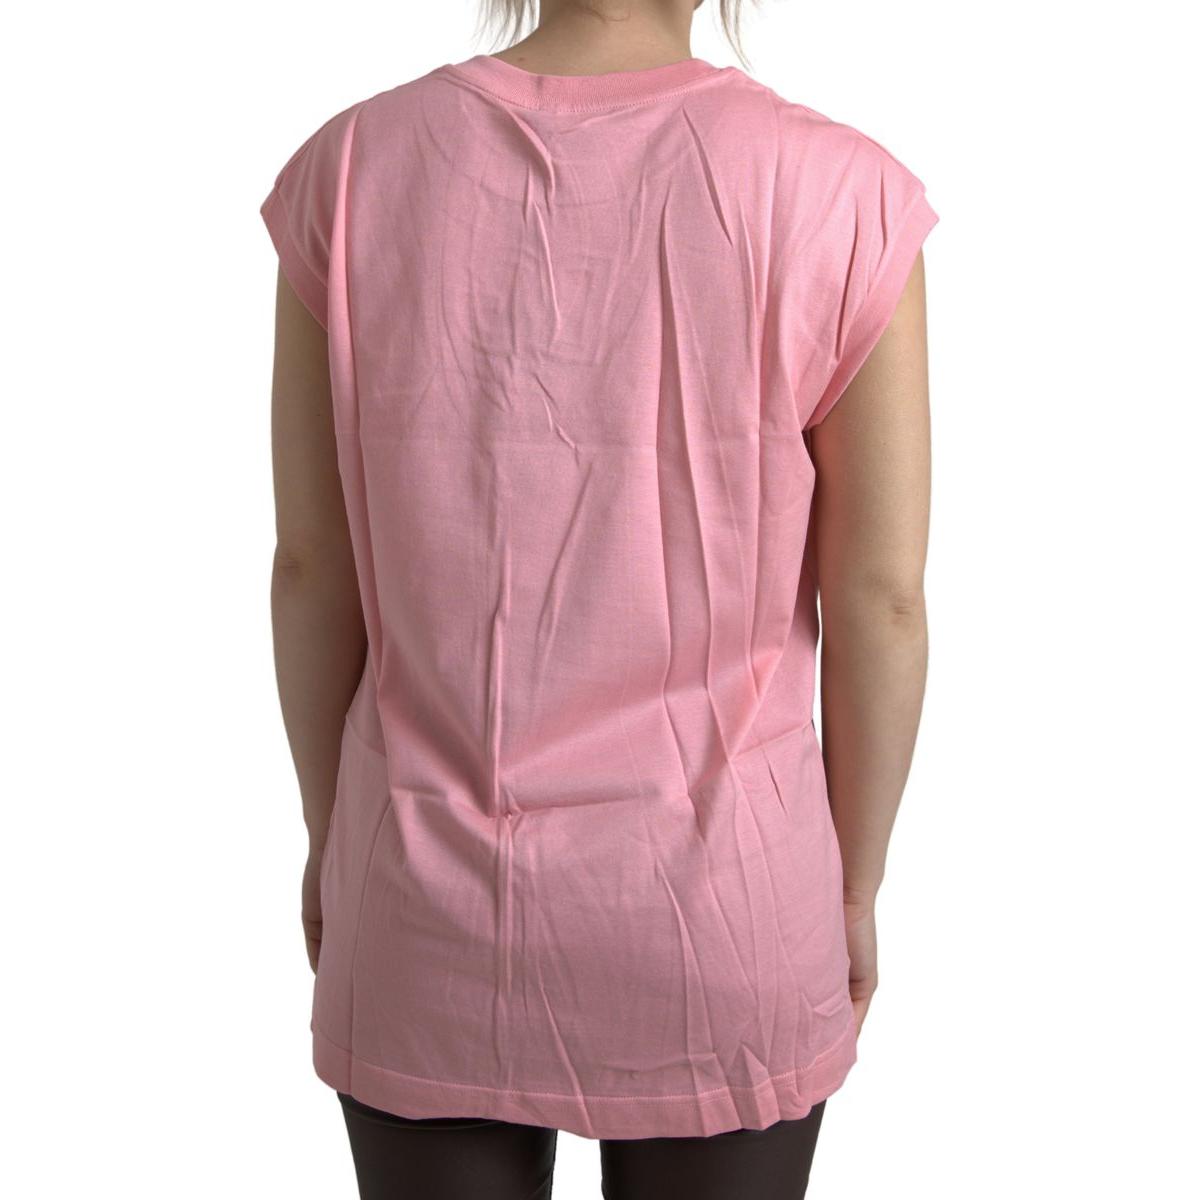 Dolce & Gabbana Elegant Pink Cotton Crew Neck Tank Top pink-cotton-dg-logo-crew-neck-tank-t-shirt